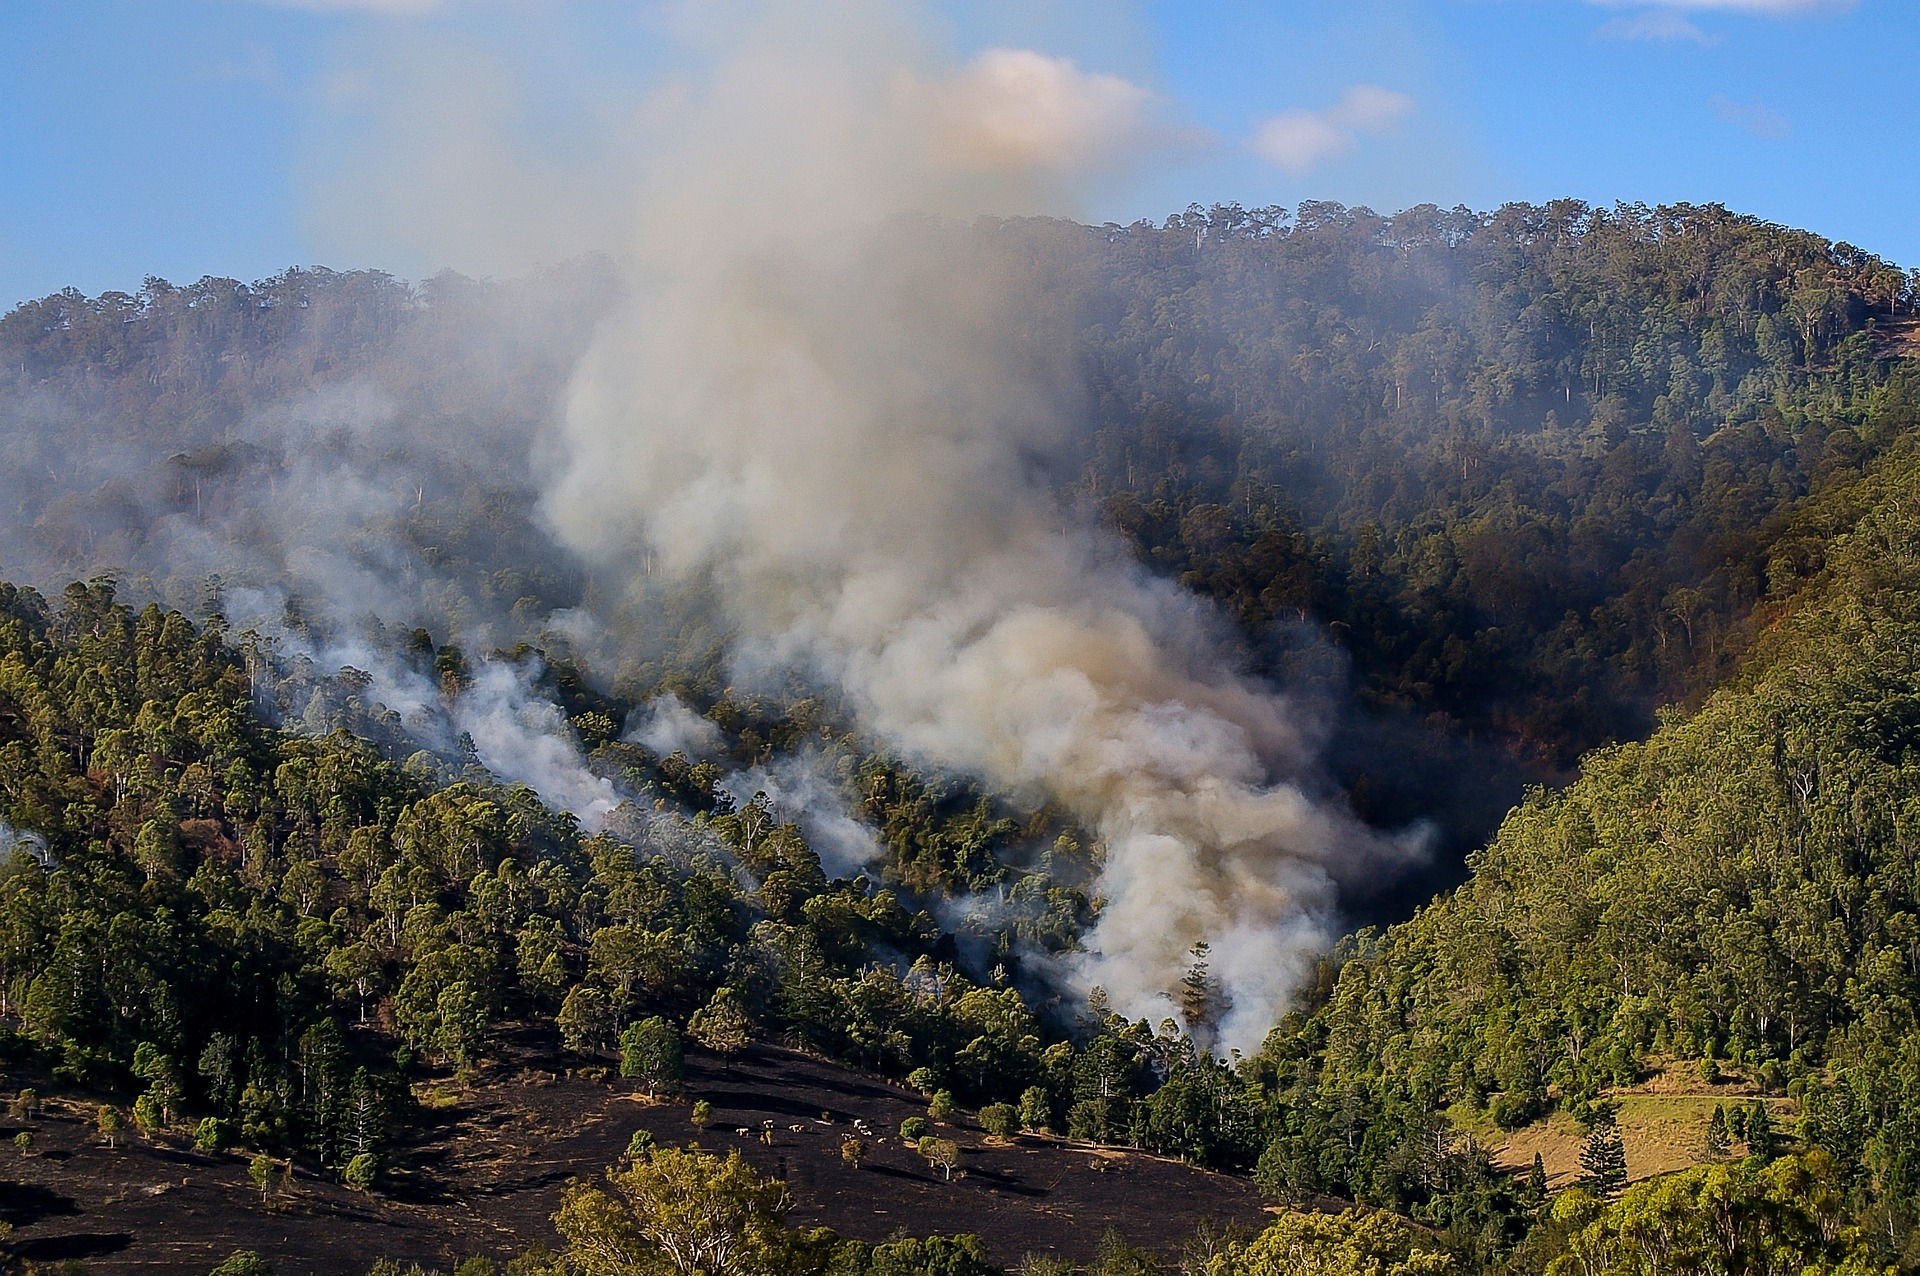 Early bushfire season in parts of NSW